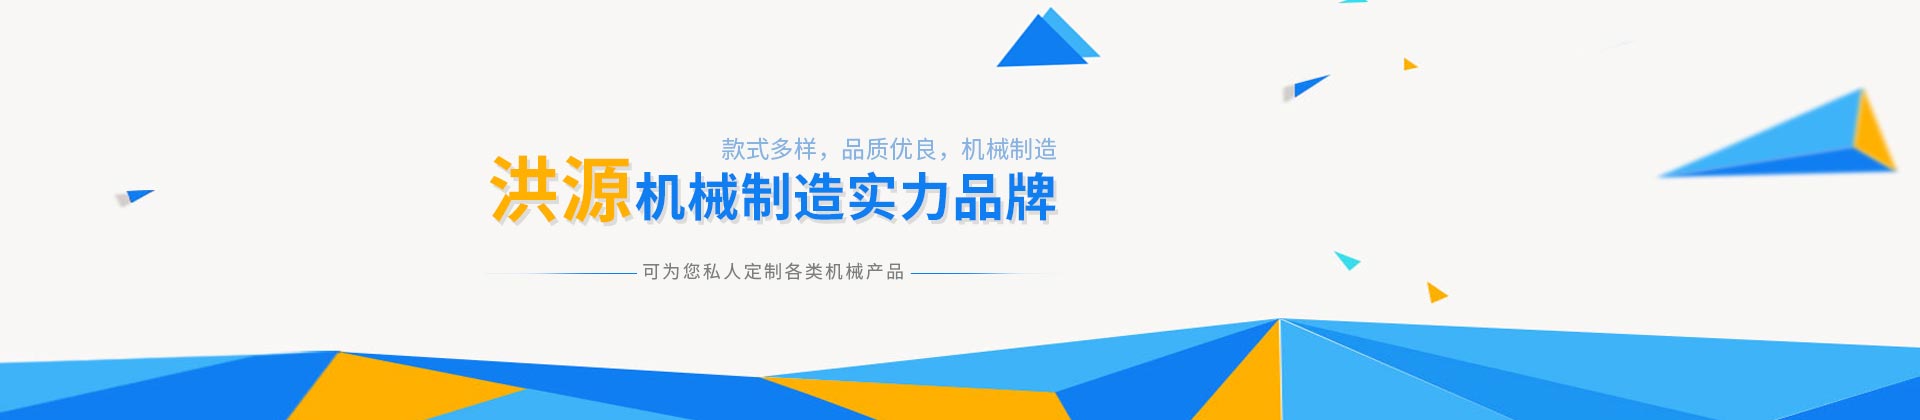 皇冠游戏官方网站(中国)有限公司官网设计